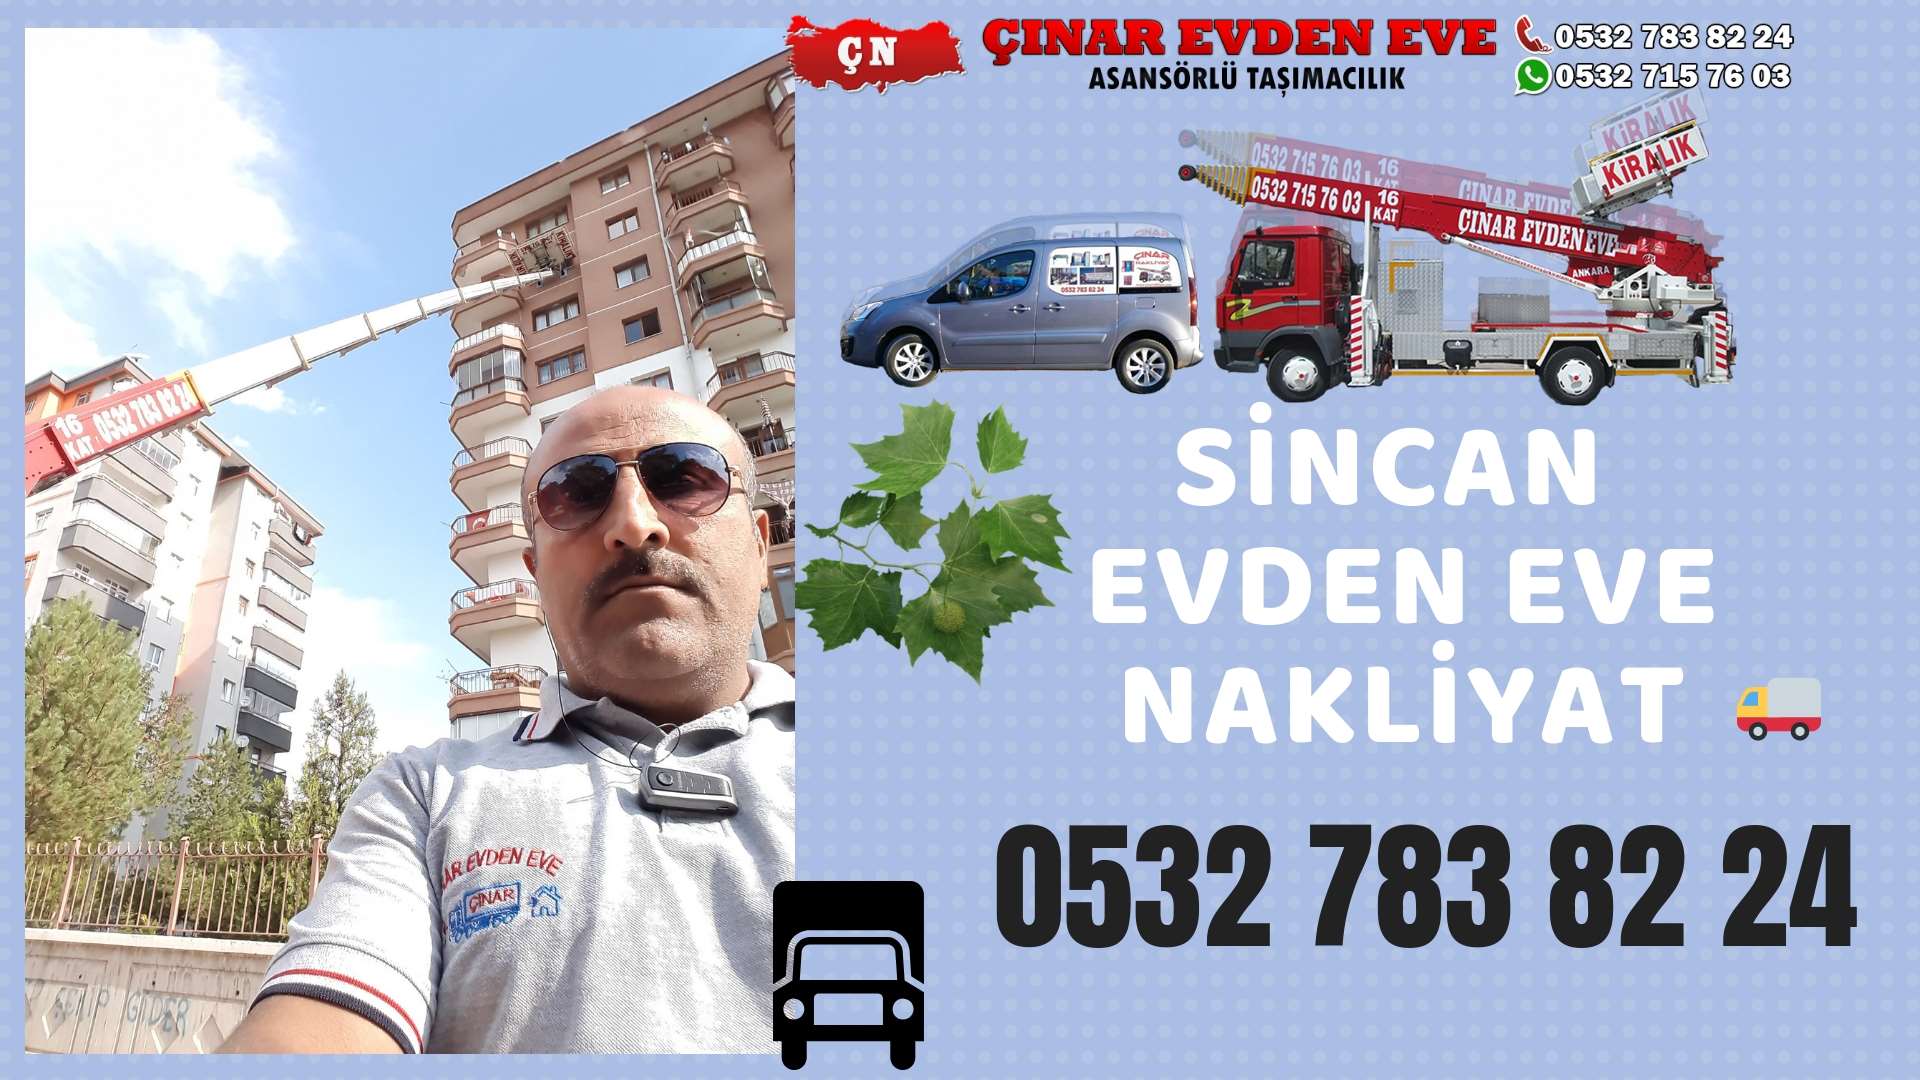 Ankara Etimesgut Evden Eve Nakliyat, Asansörlü Taşımacılık, Ofis / İş Yeri Taşıma 0532 715 76 03